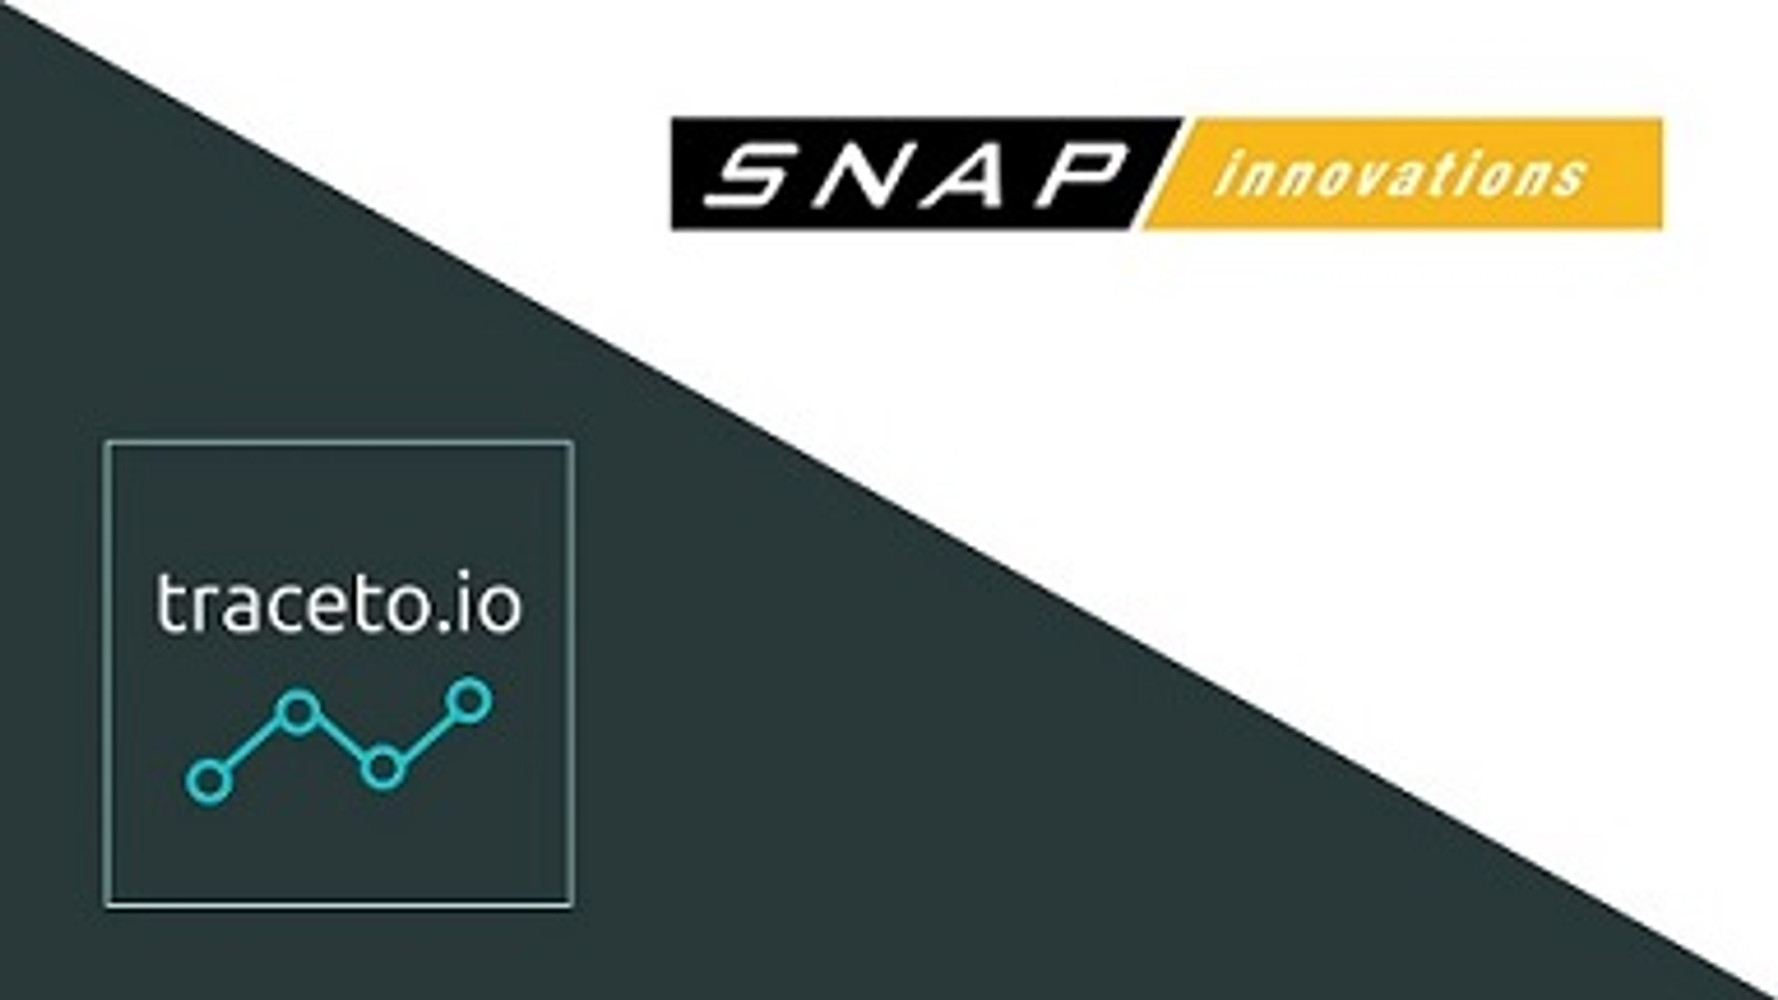 SNAP innovations Pte Ltd